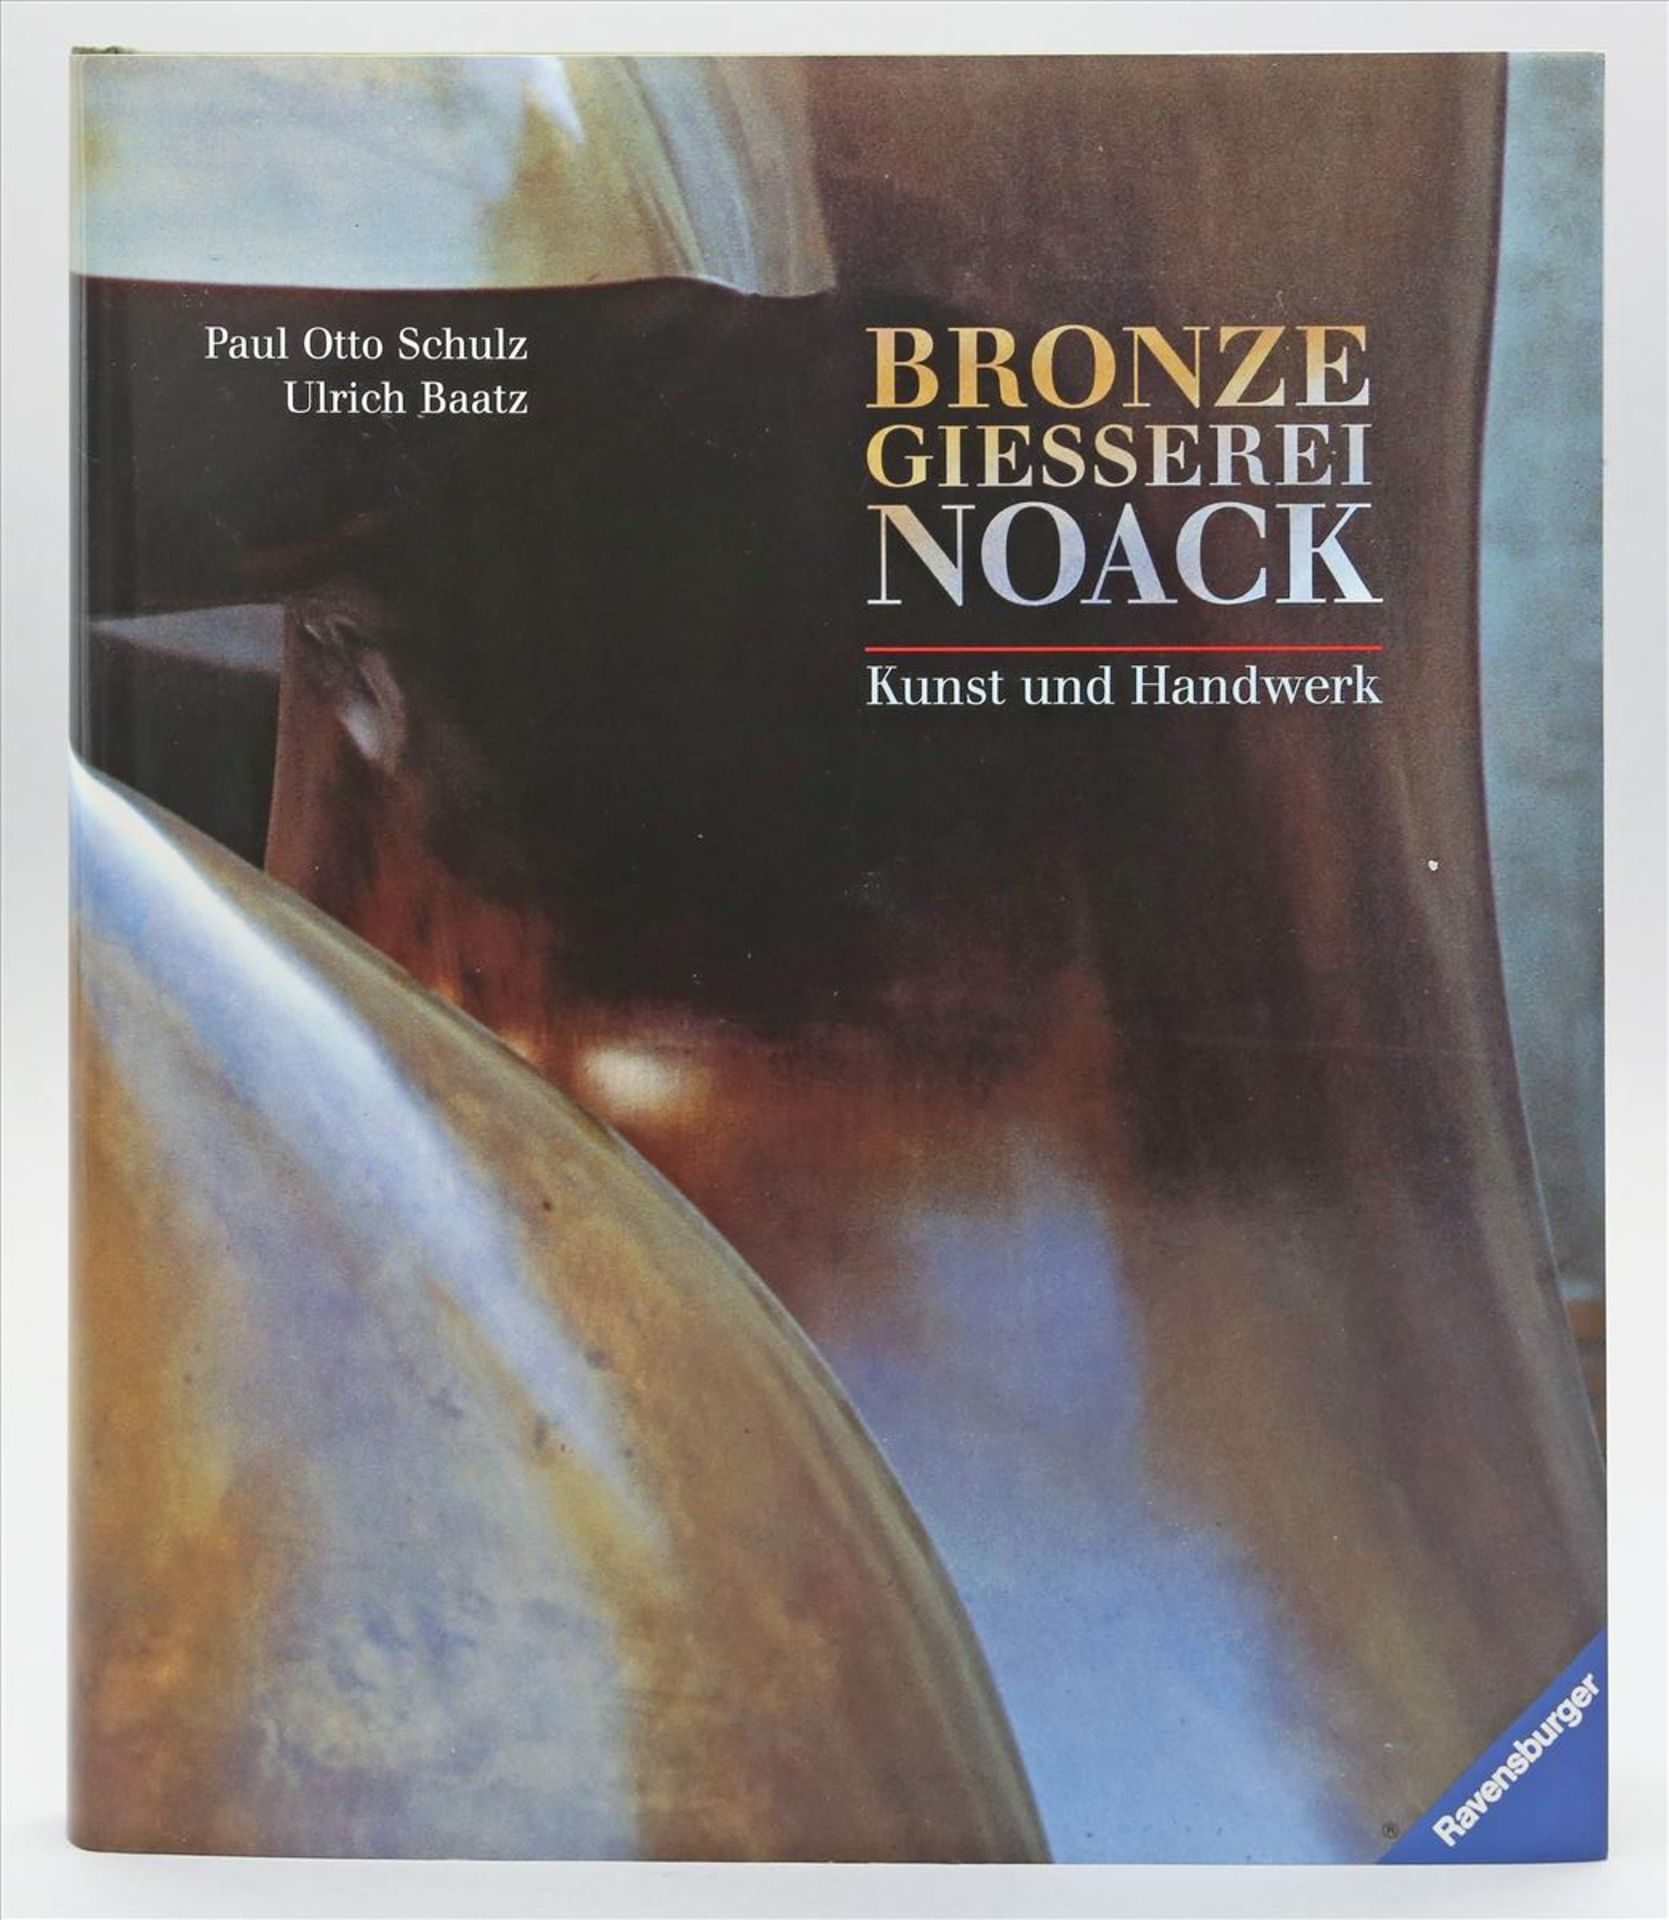 Buch "Bronzegiesserei Noack",